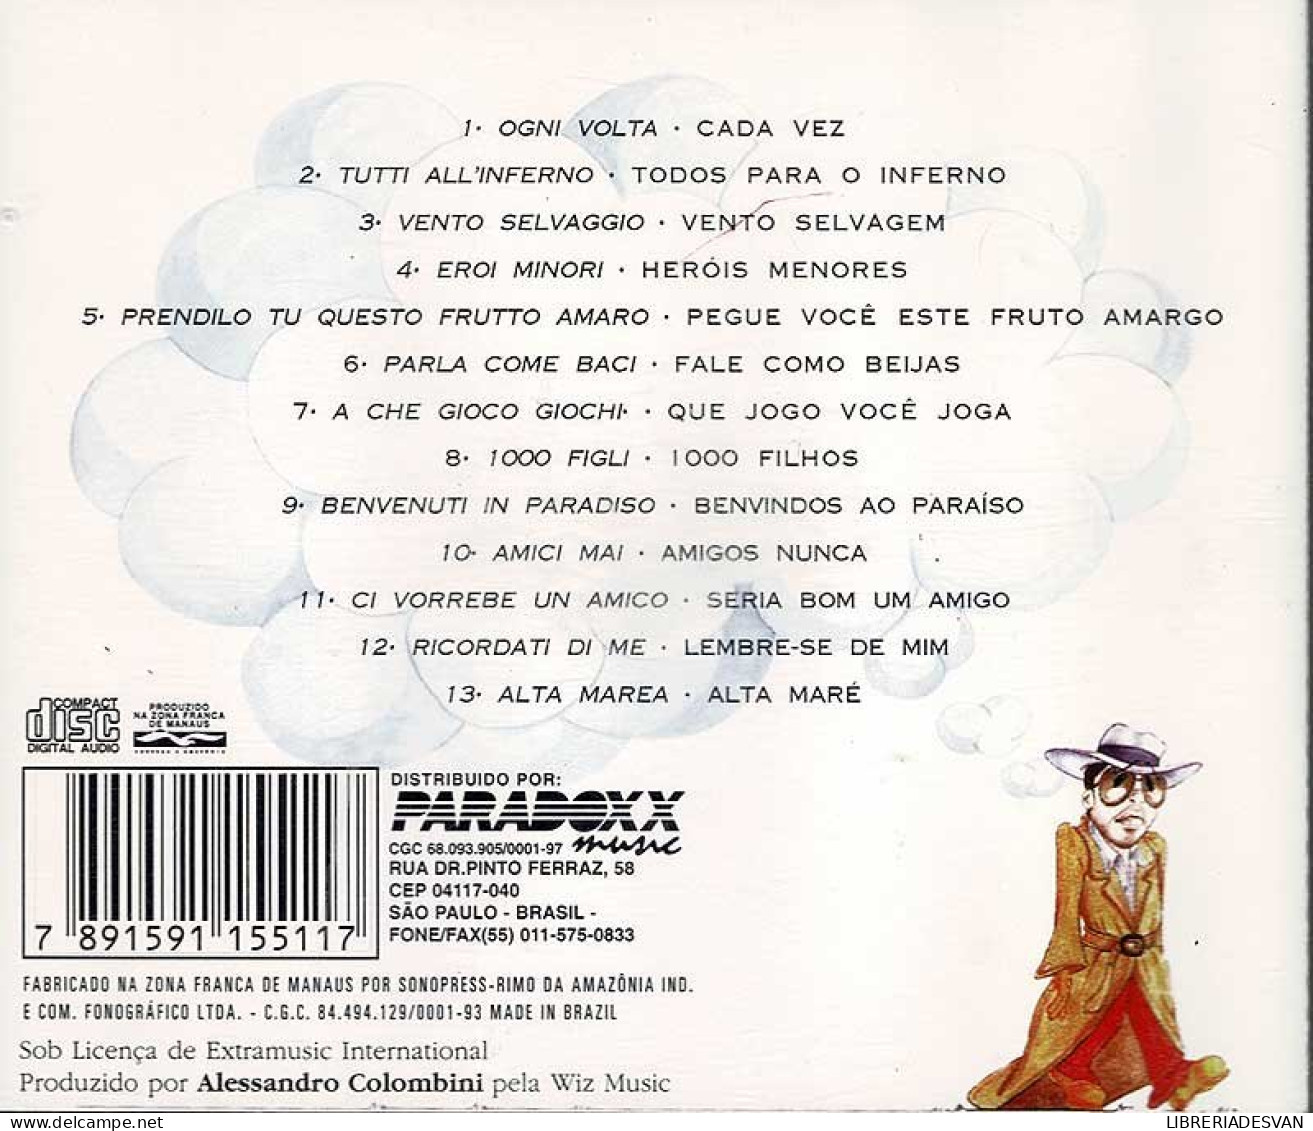 Antonello Venditti - Prendilo Tu Questo Frutto Amaro. CD (Made In Brazil) - Disco, Pop